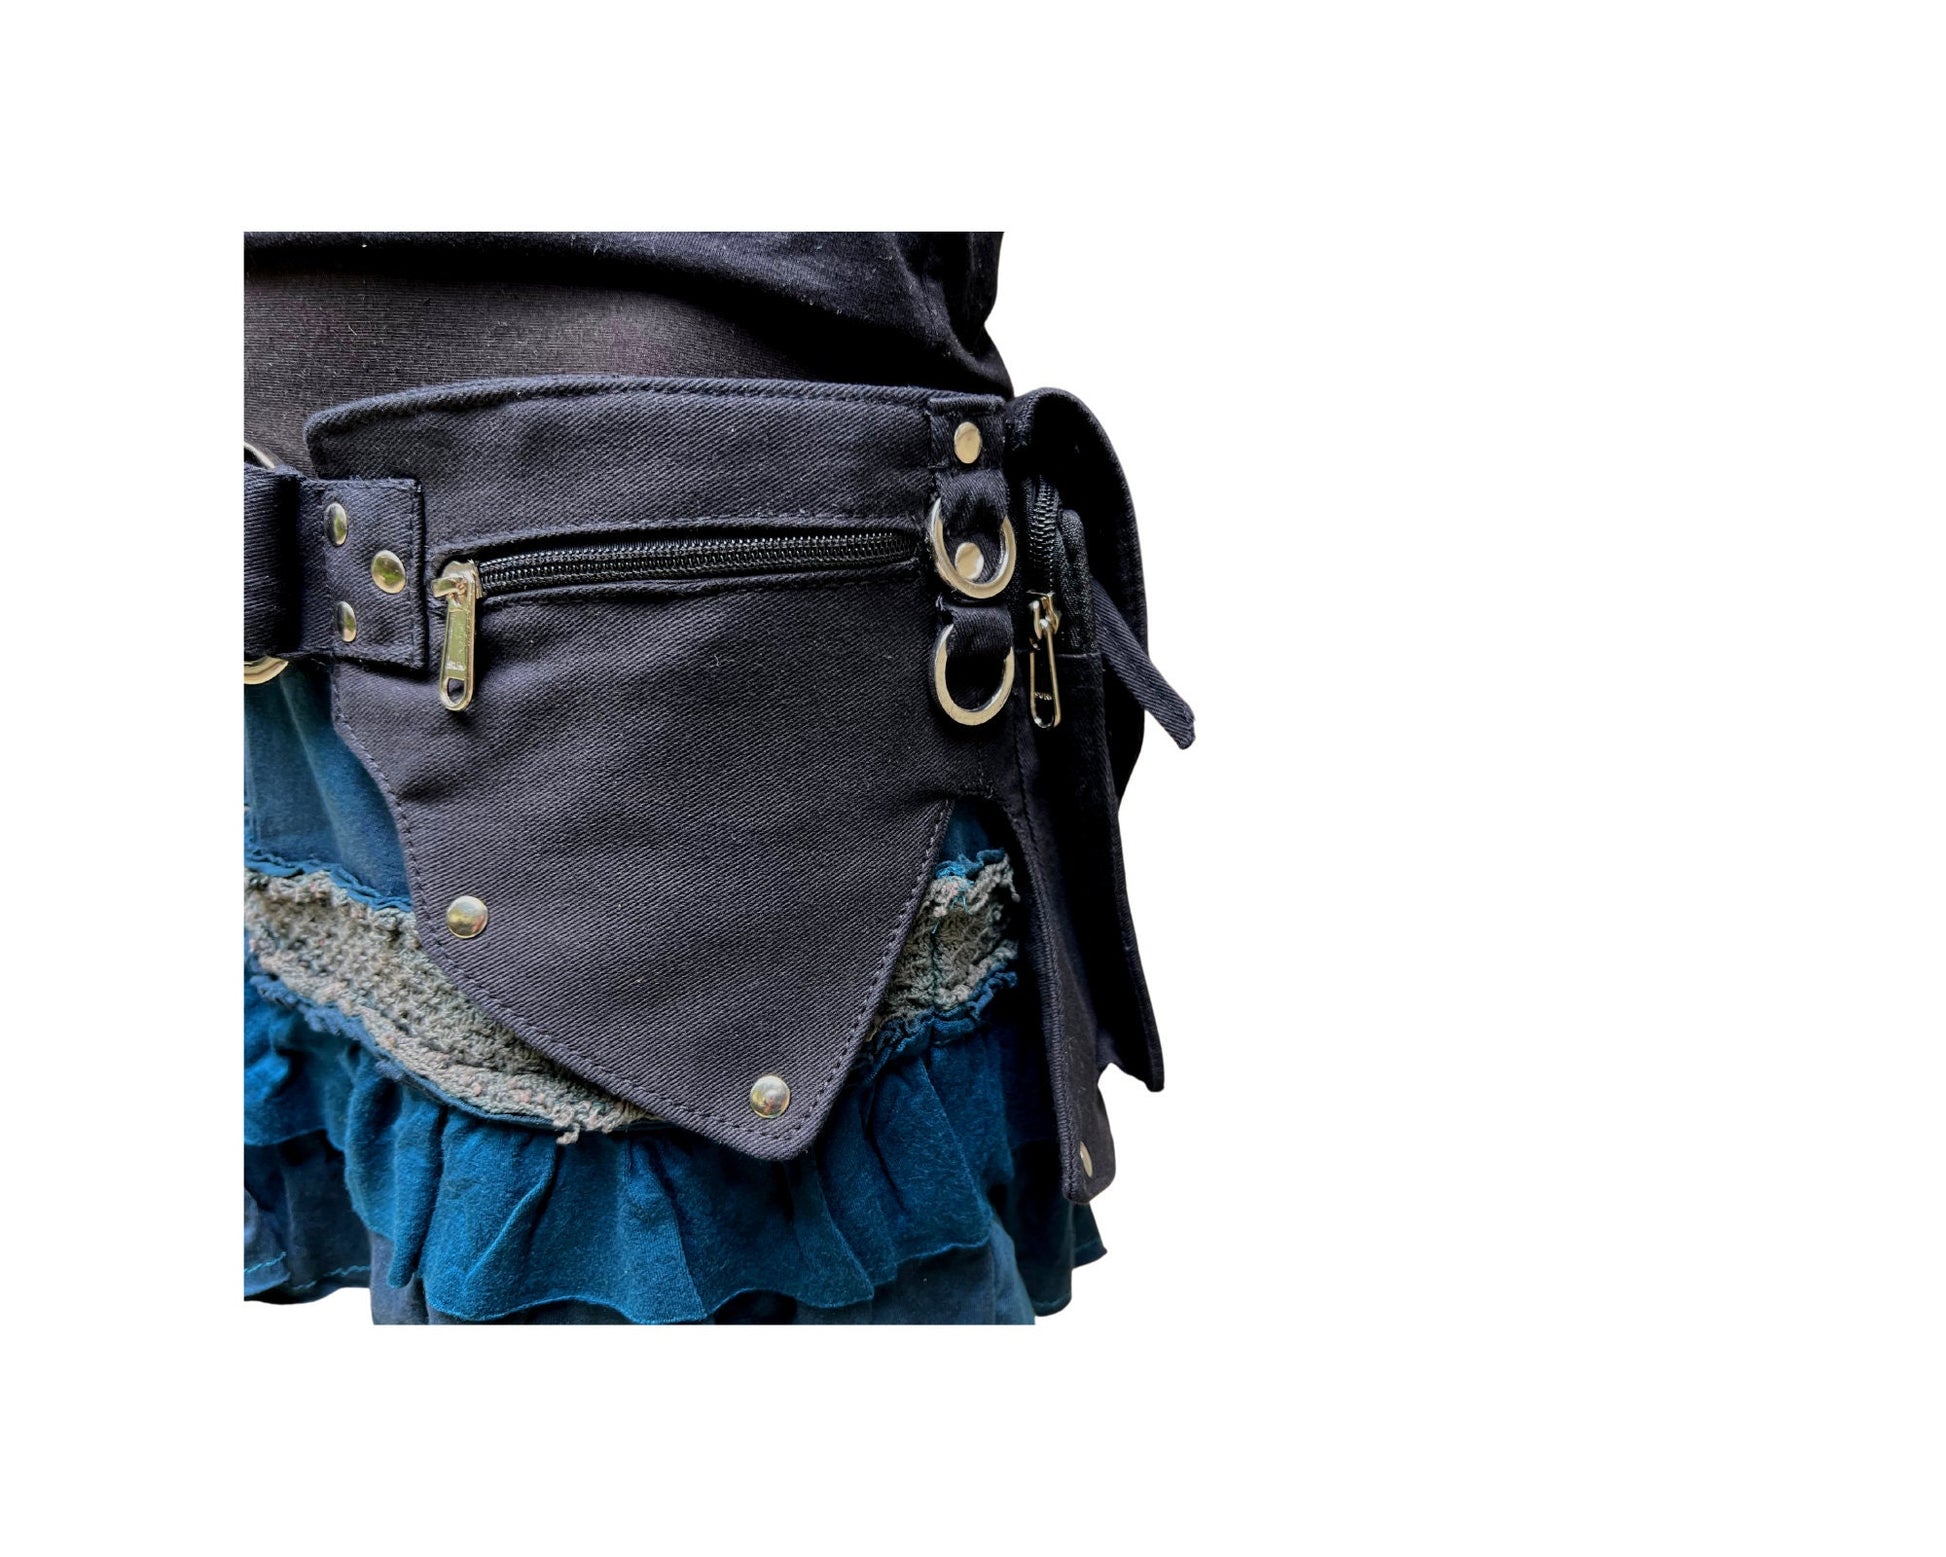 Burning Man Bag, Leather Holster bag, Festival Bag, Utility Harness Bag,  Unisex